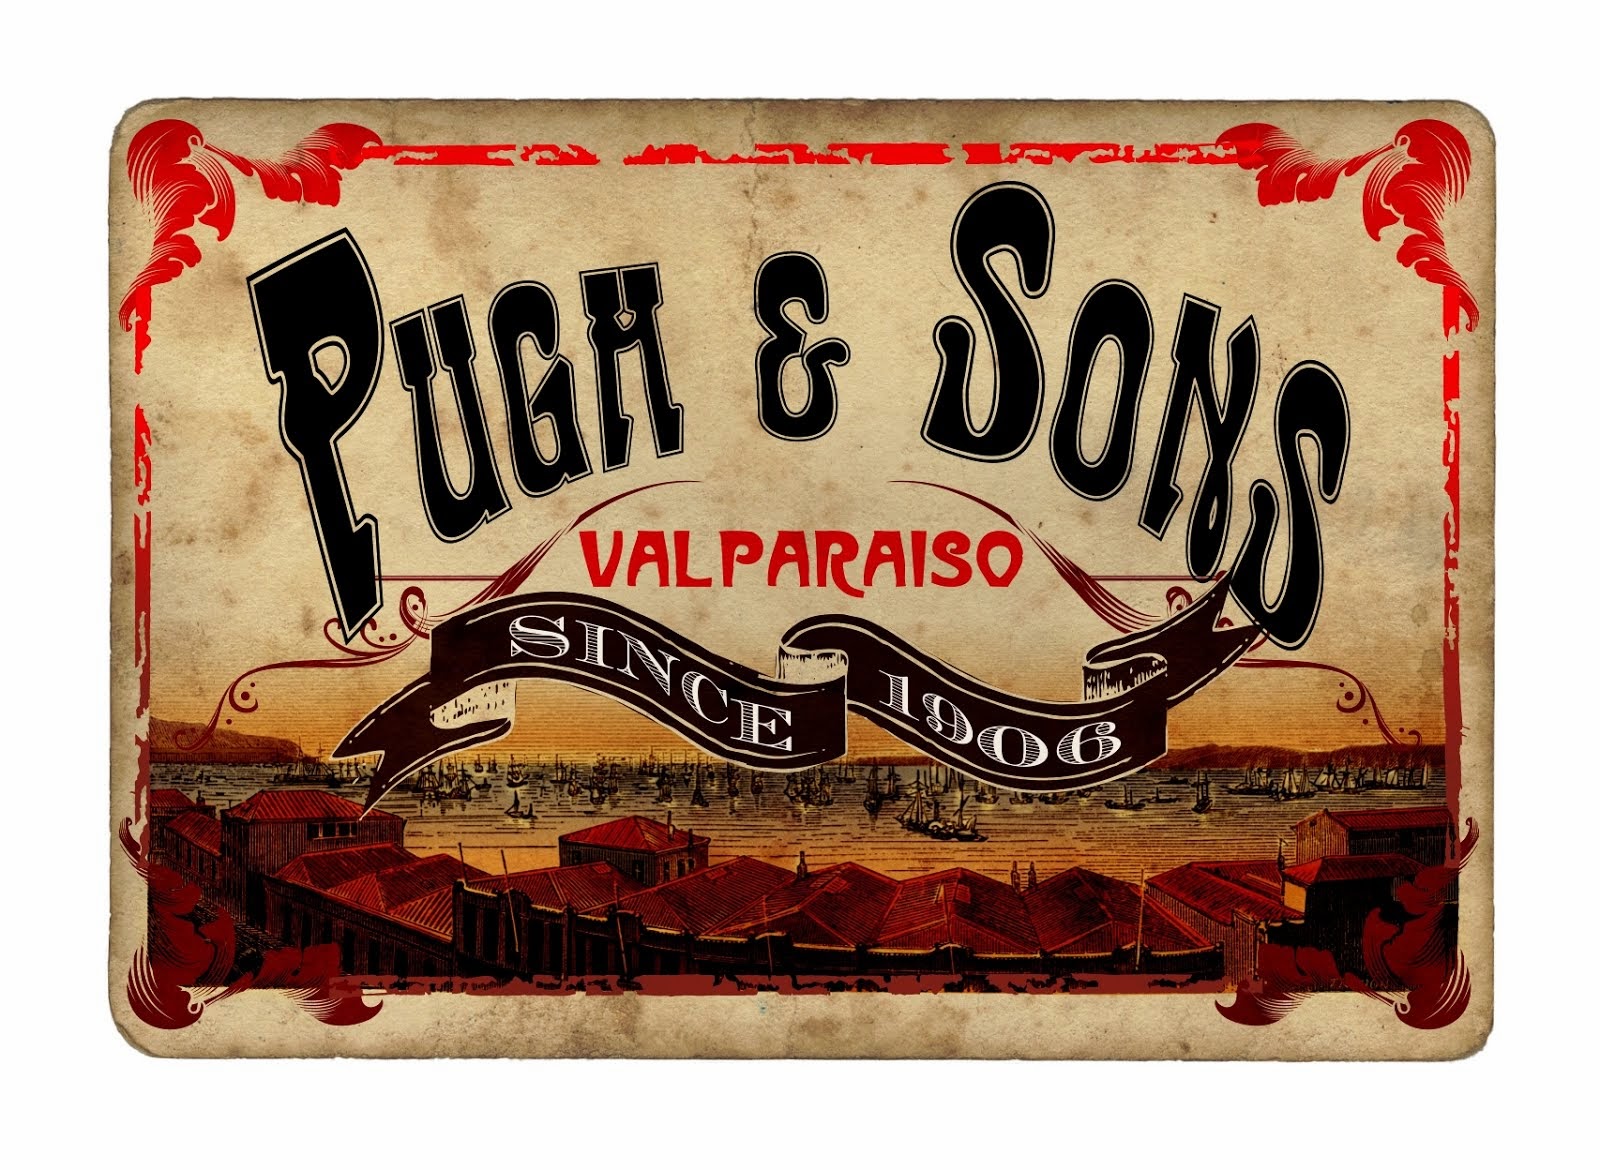 Diseño "Pugh & Sons"